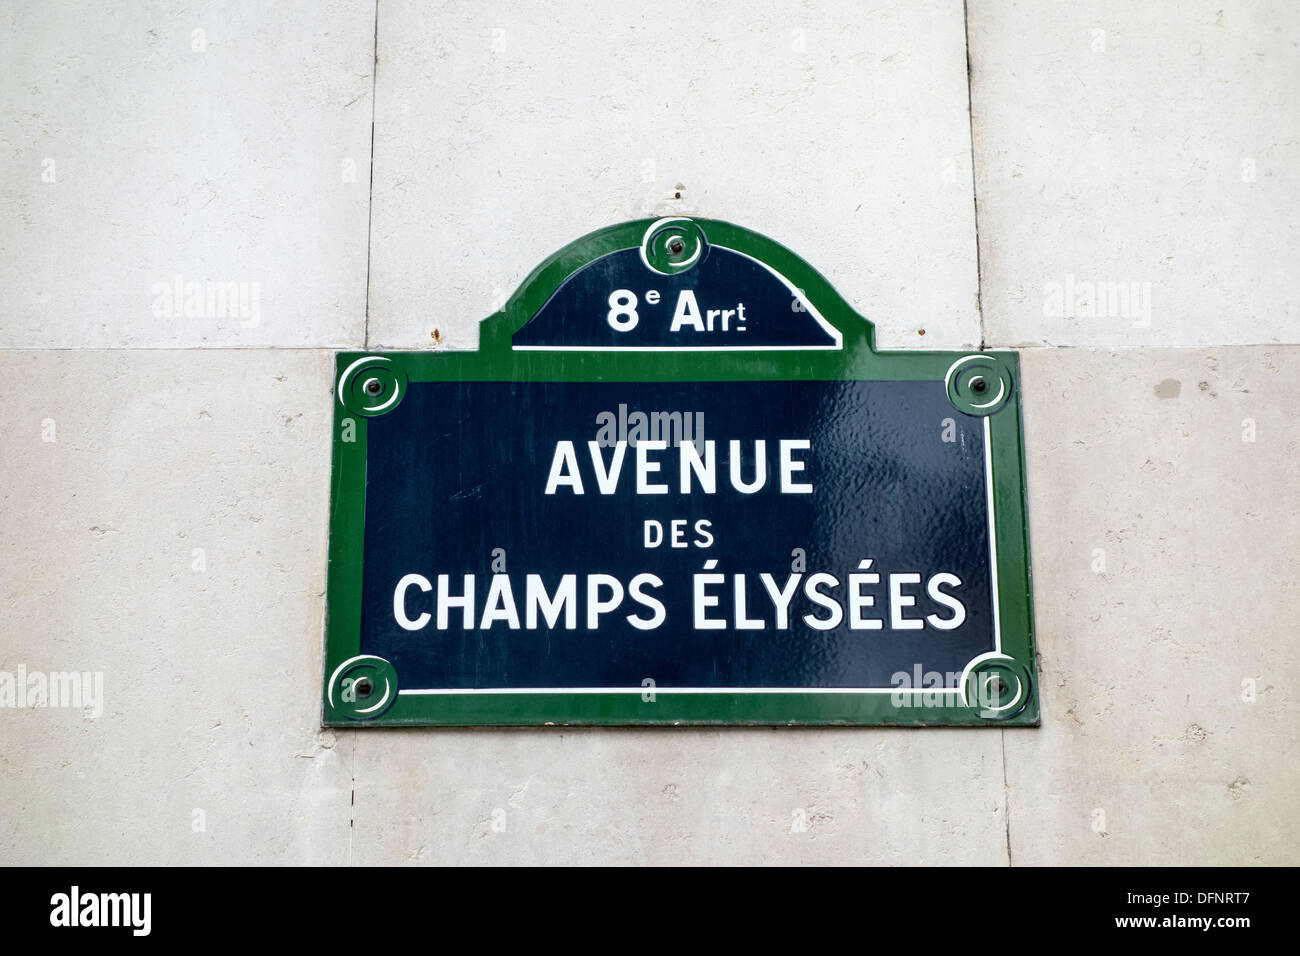 Avenue des champs elysees, paris, france Stock Photo